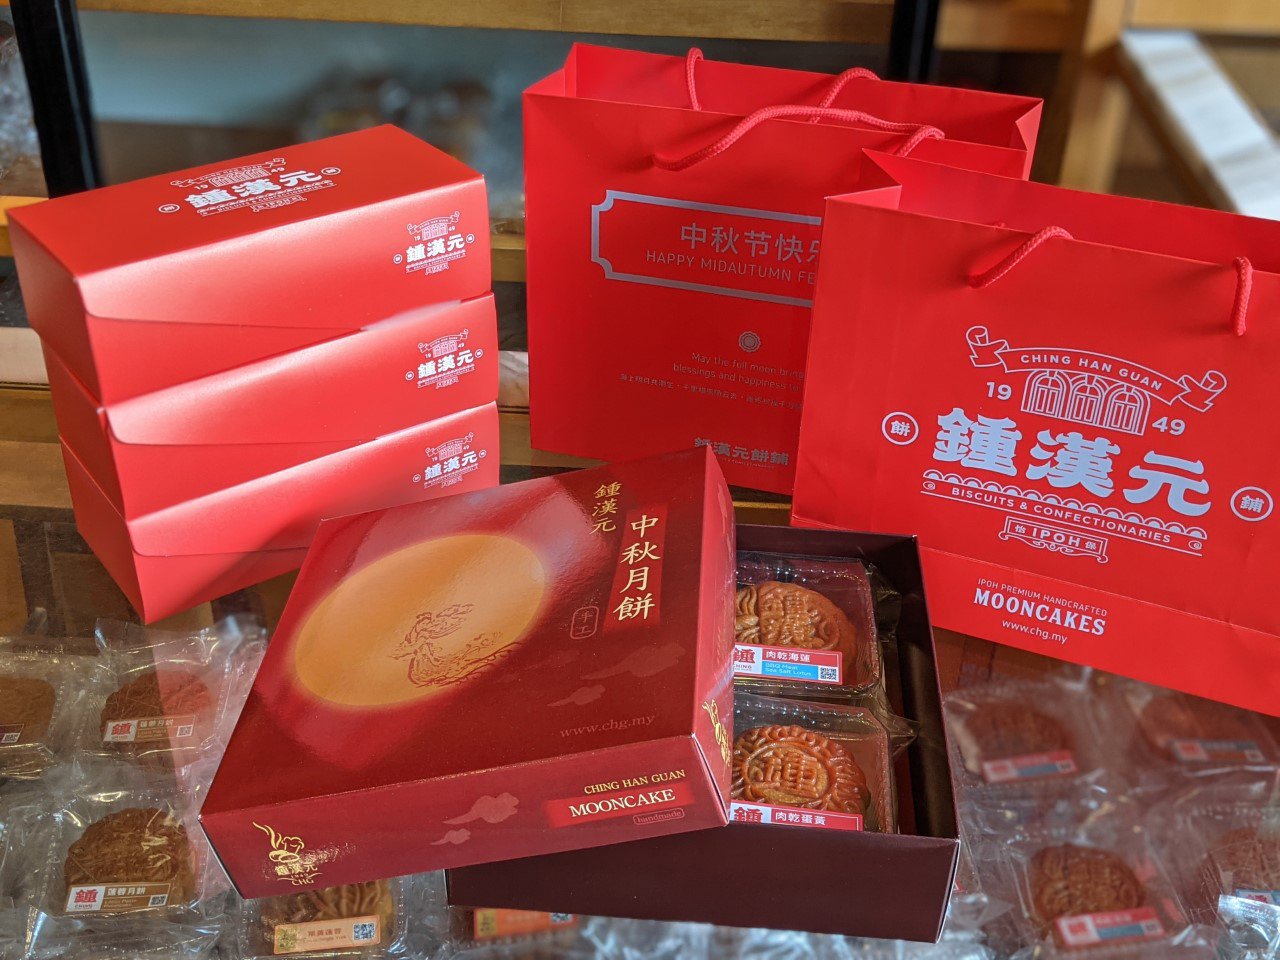 锺汉元目前的客户群较为注重味道，因此店家至今仍沿用设计较为传统的纸盒包装，已经9年未更换包装了。